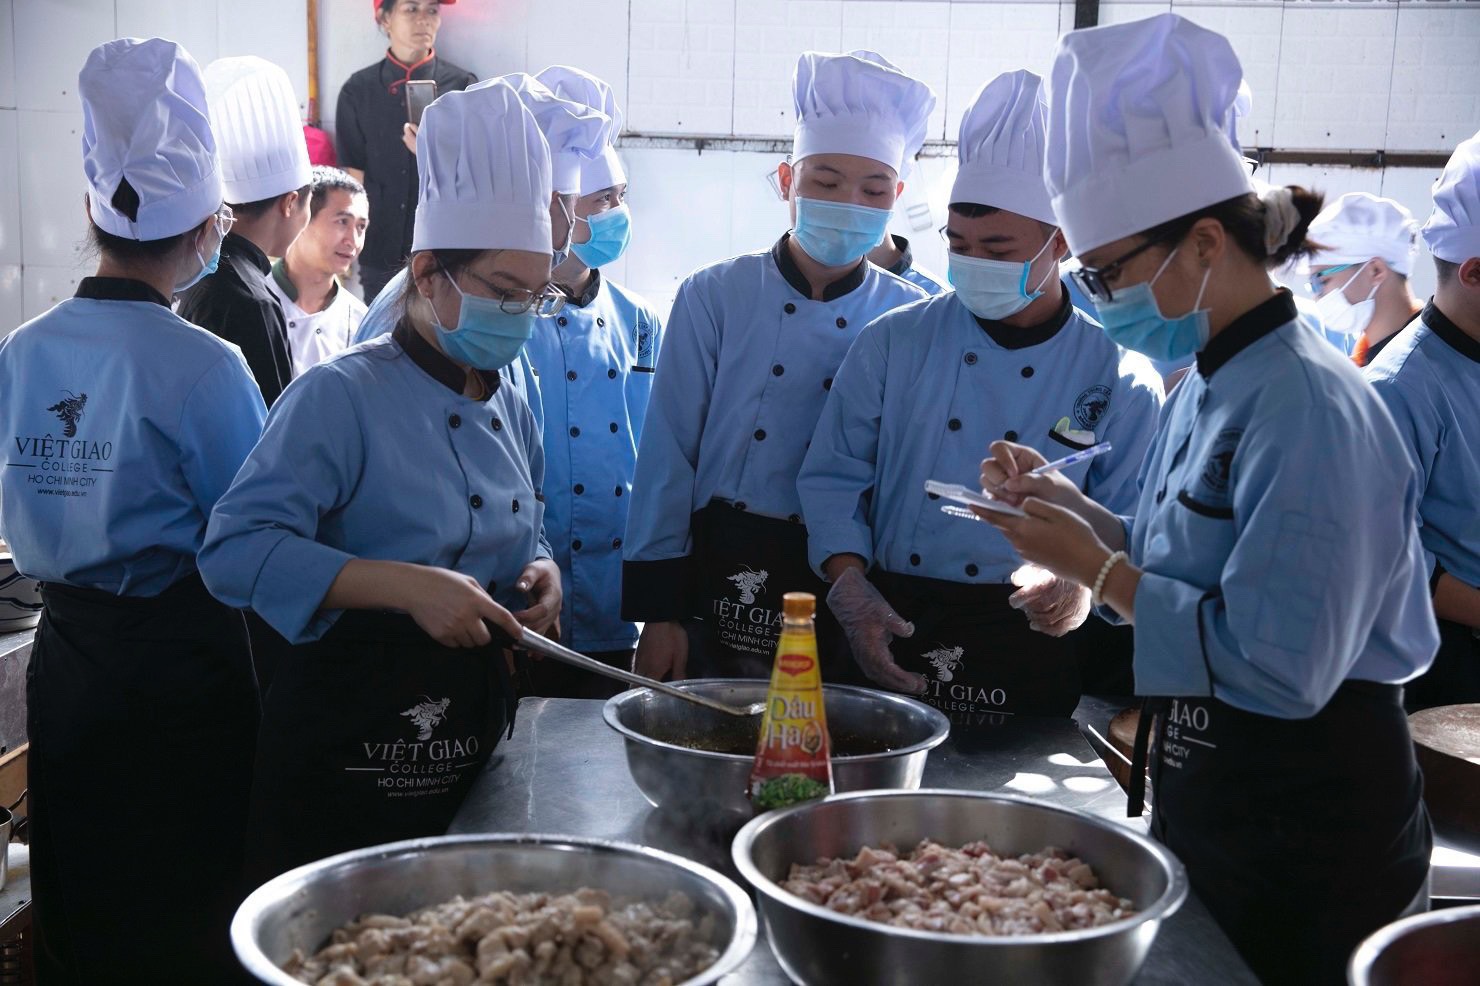 Tuyển sinh lớp 10: Trung cấp Việt Giao đã có chương trình đào tạo bếp trưởng- Ảnh 1.